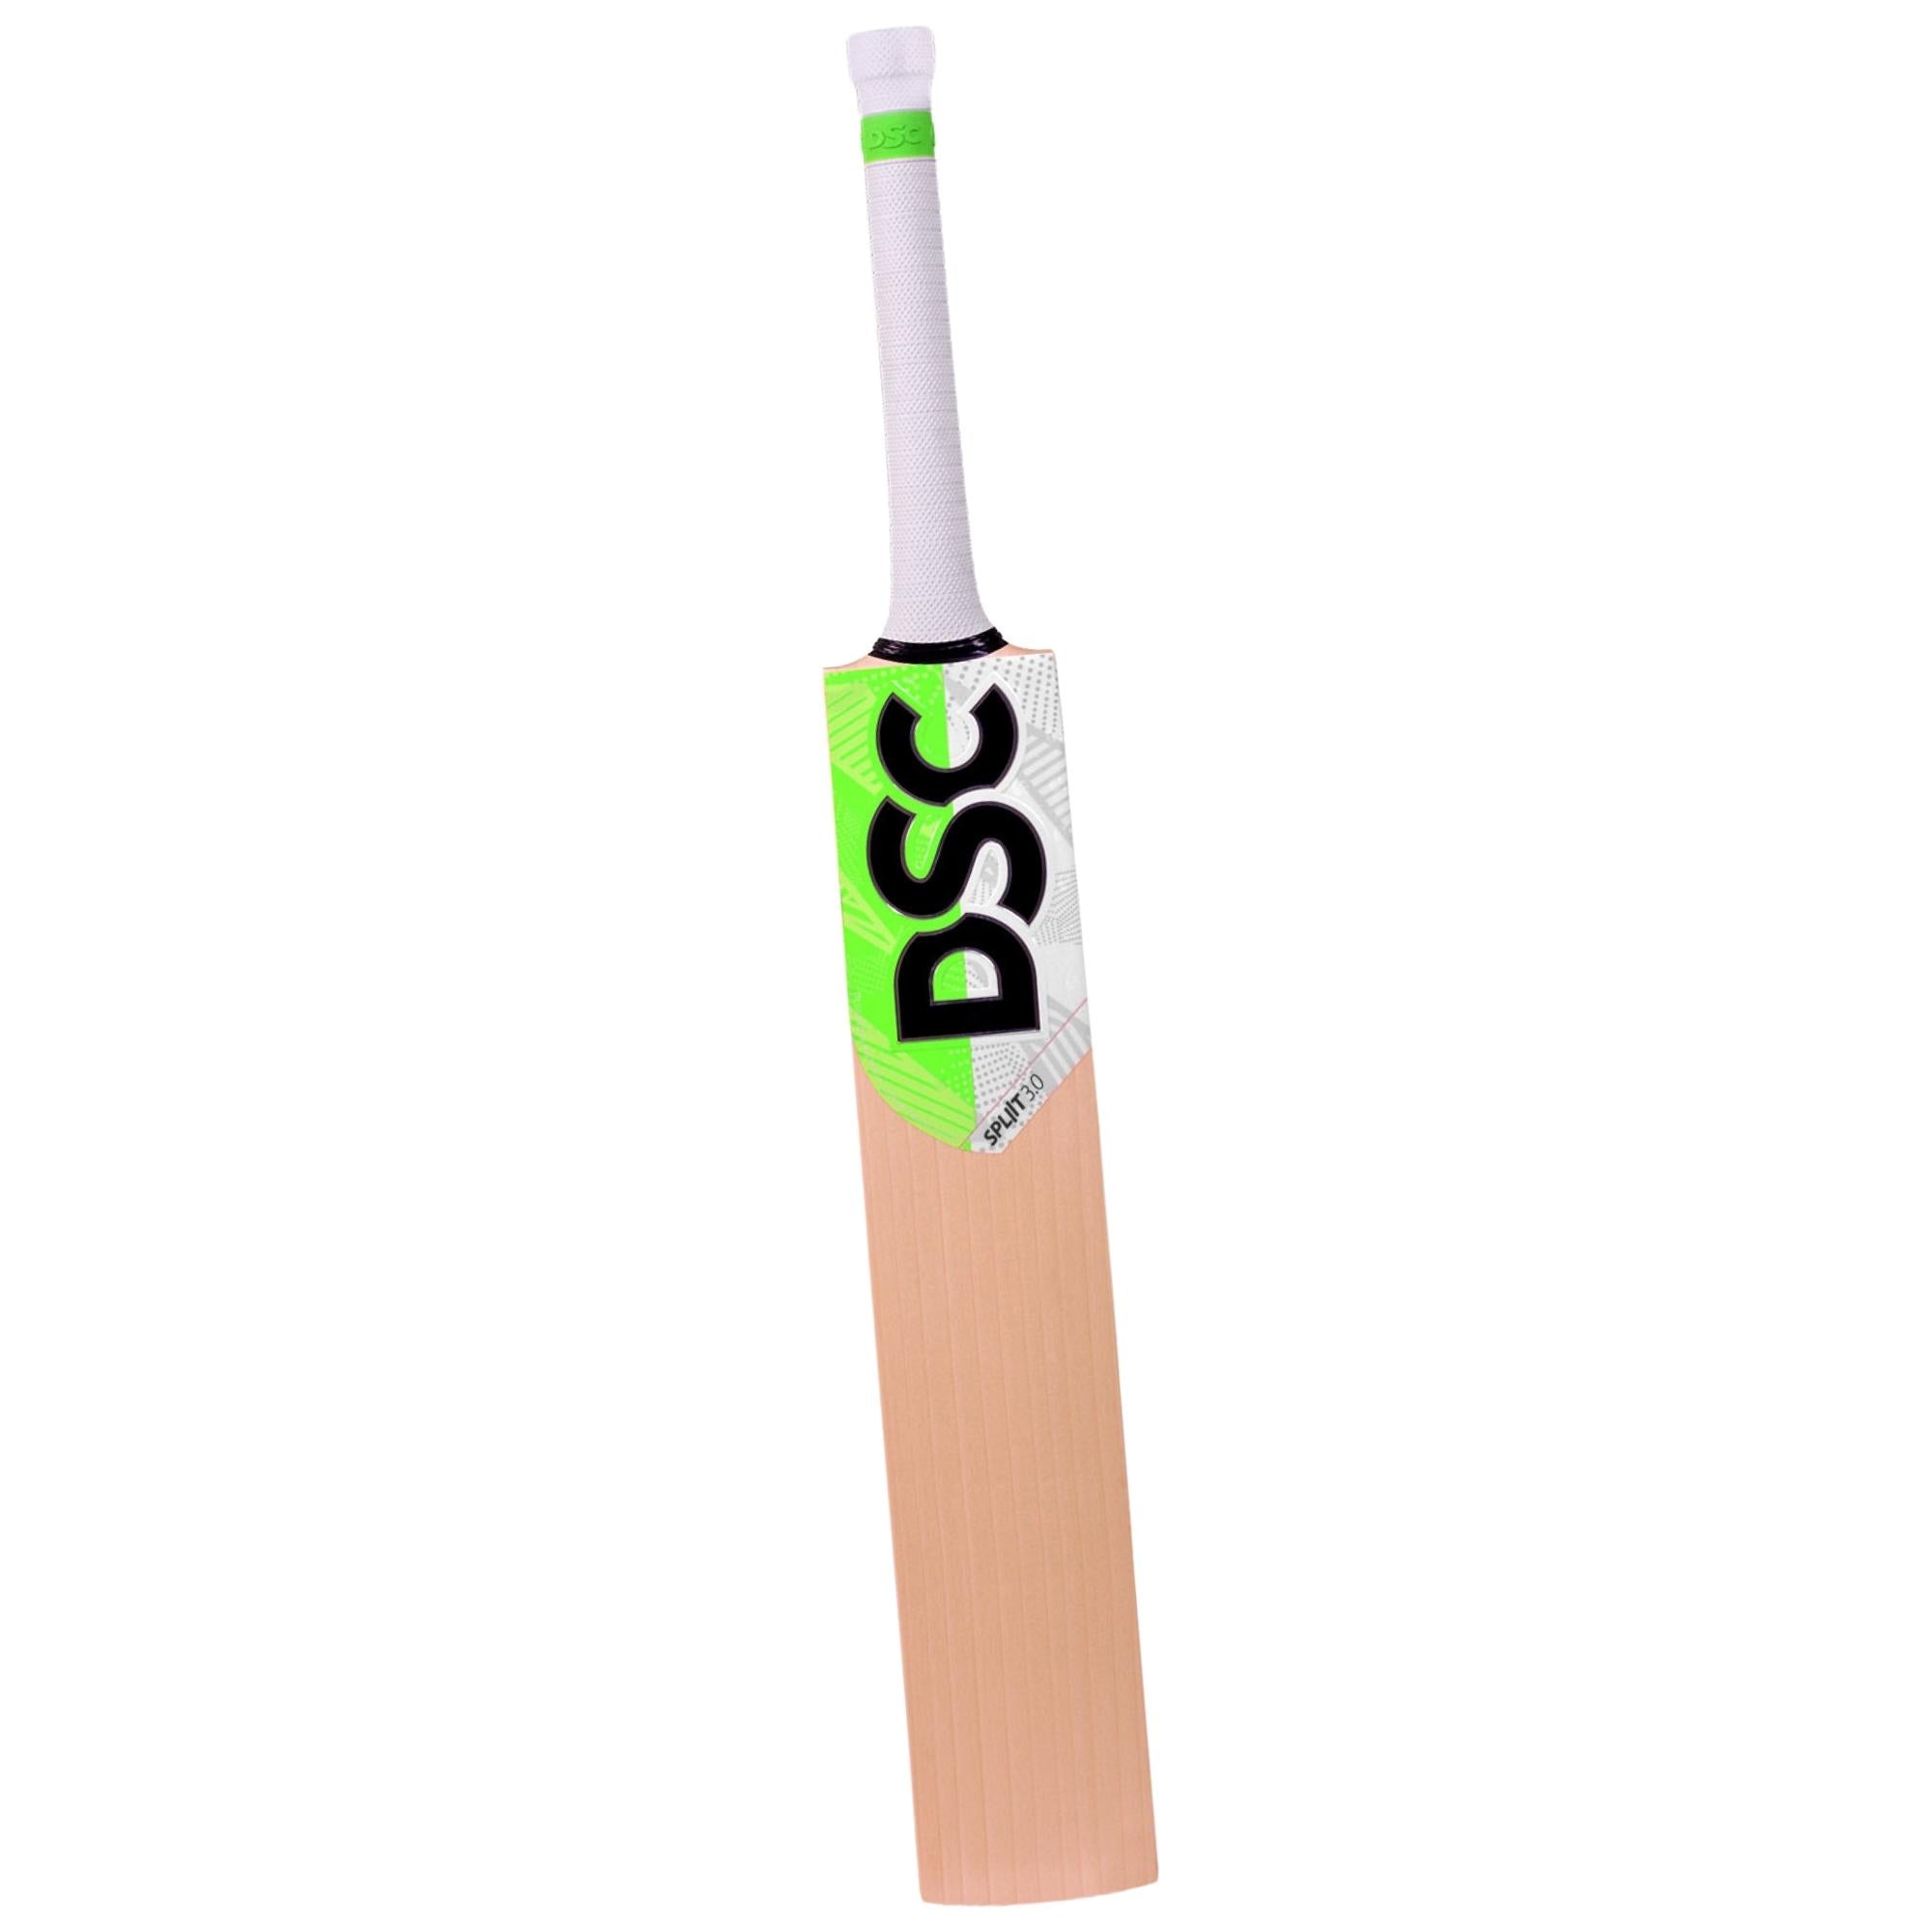 DSC Split 3.0 Harrow Cricket Bat